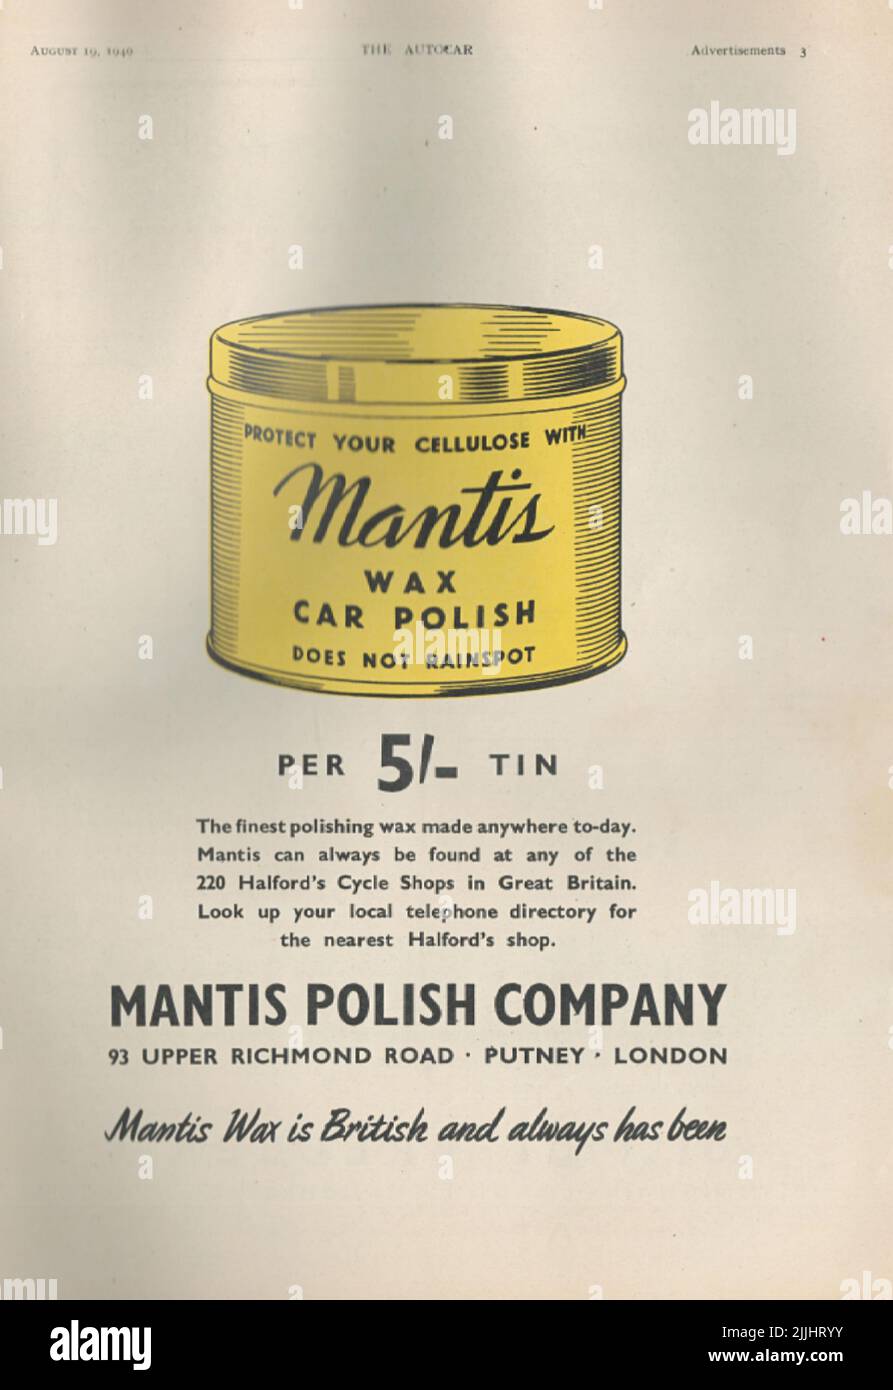 Mantis Polish Comany Cera coche Polisproteja su celulosa con Mantis car cera polish viejo anuncio de la vendimia de una revista de coches del Reino Unido 1949 Foto de stock